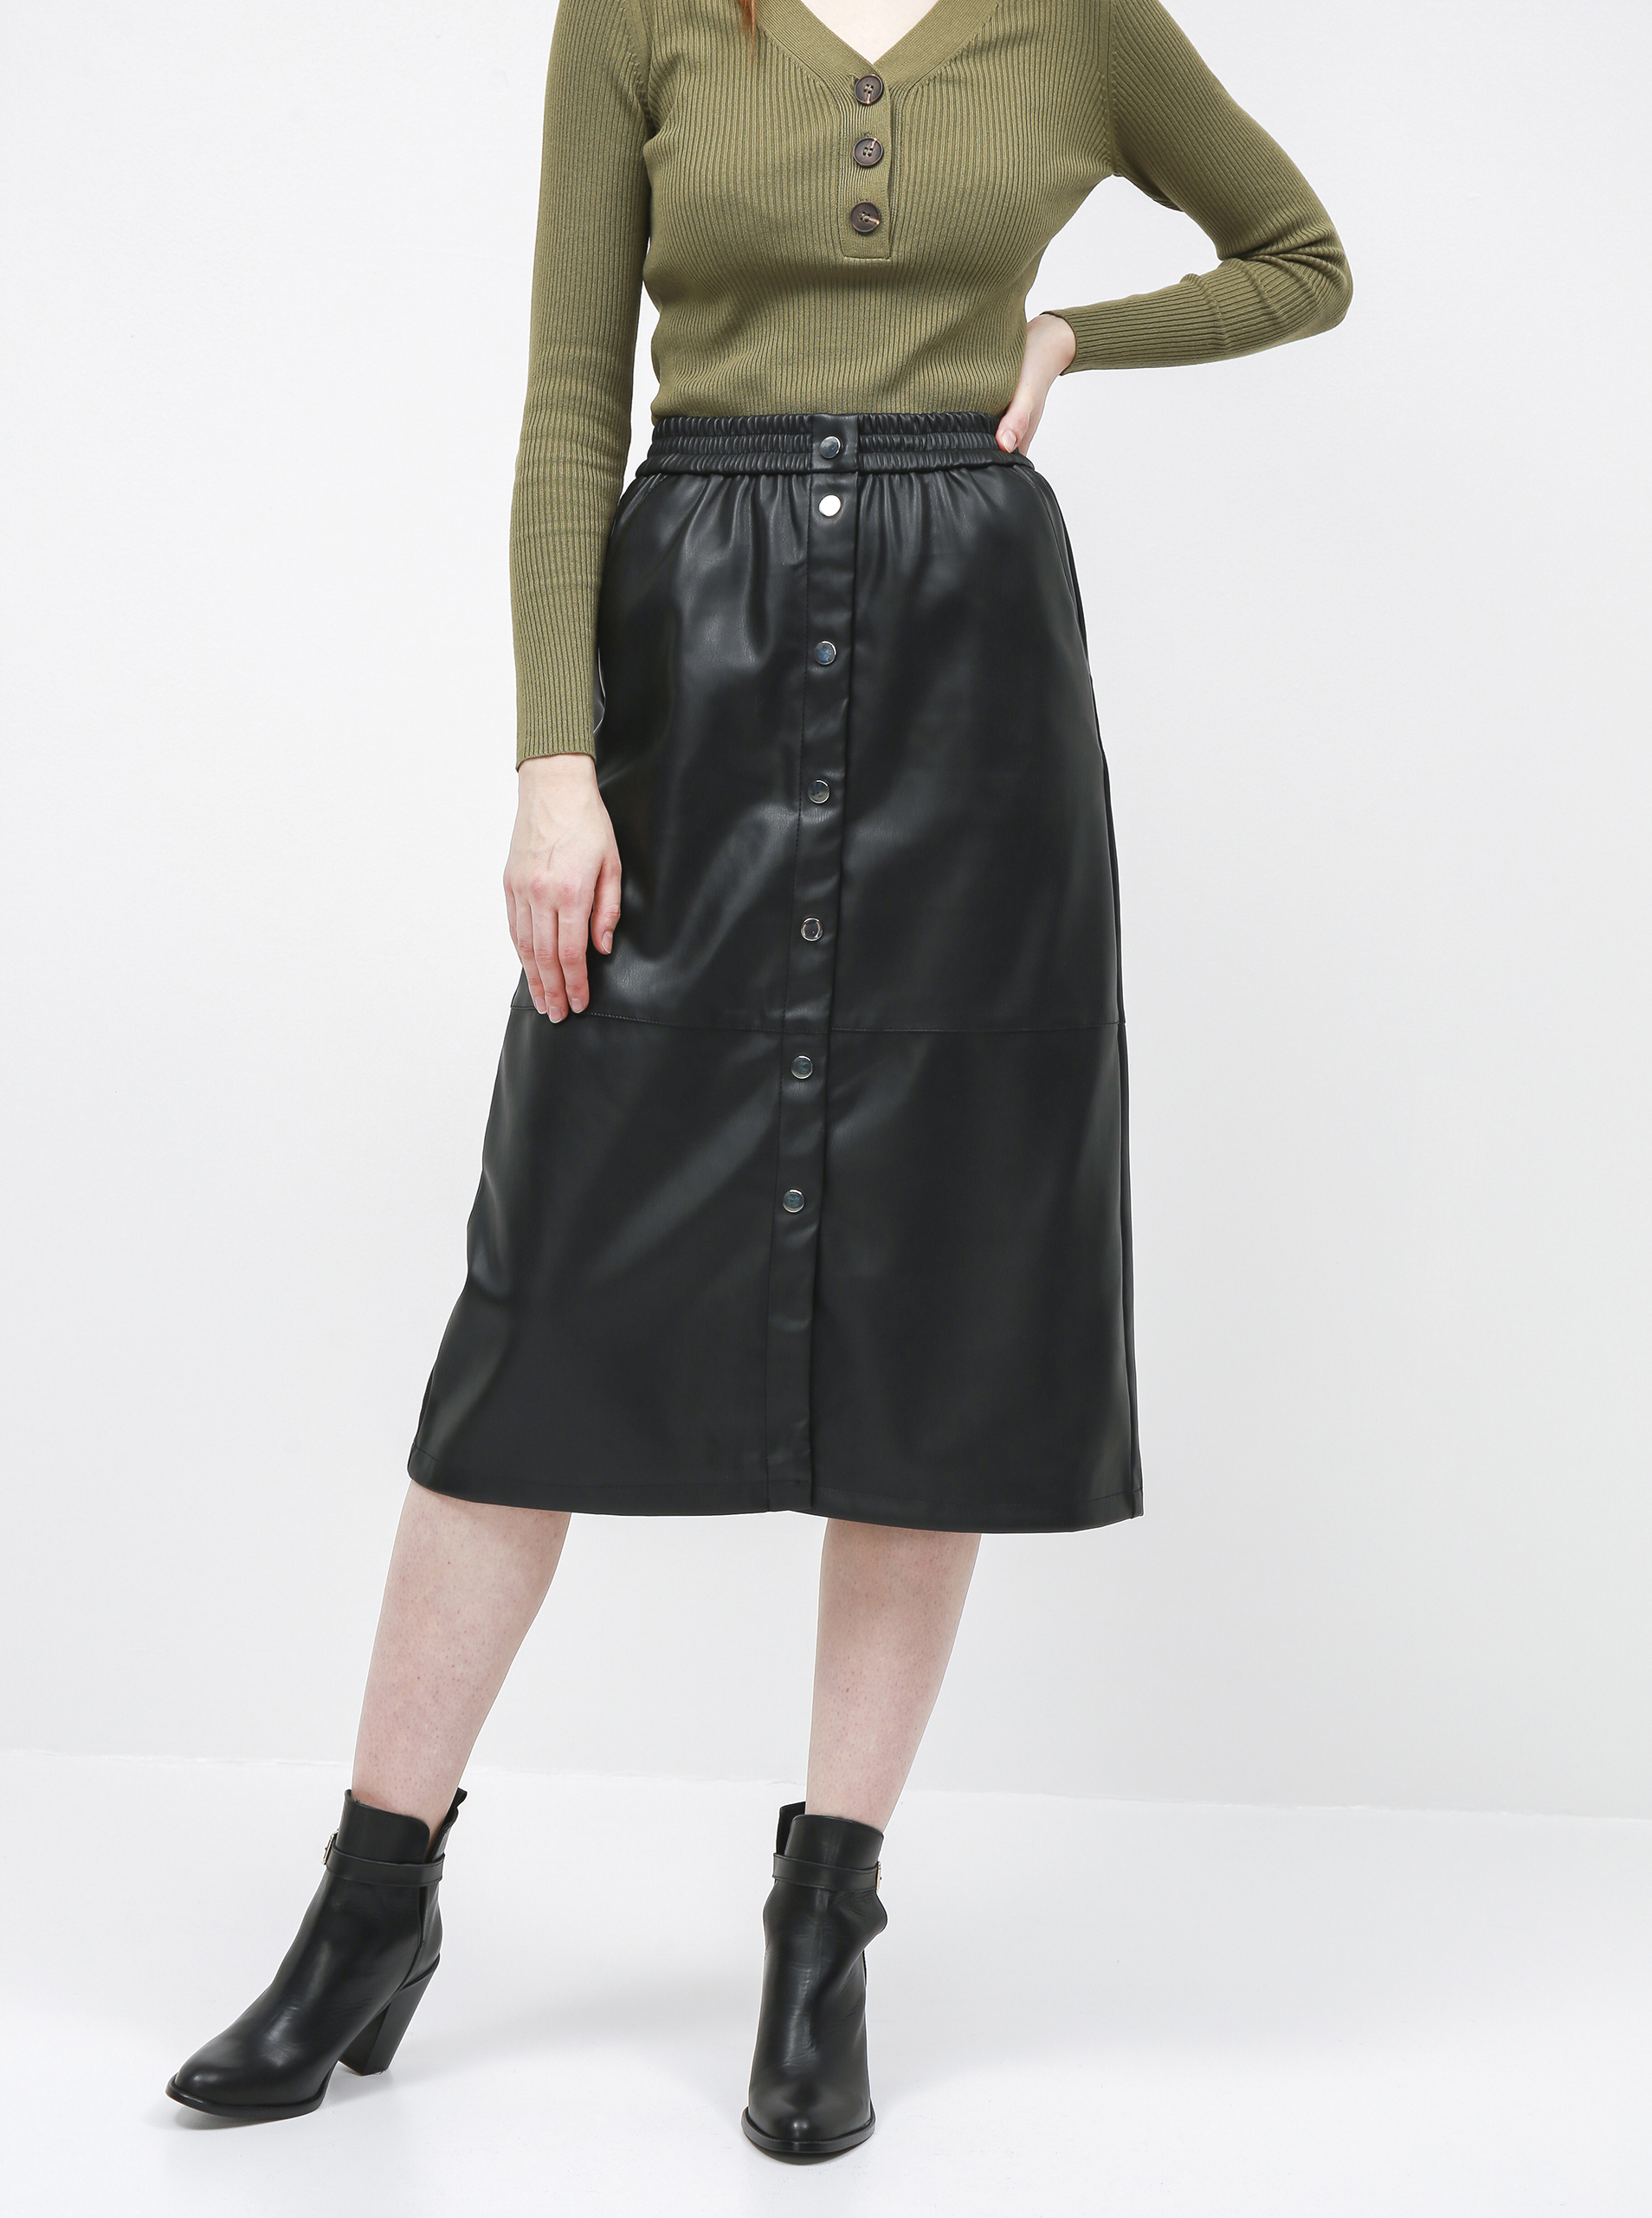 vila black leather skirt